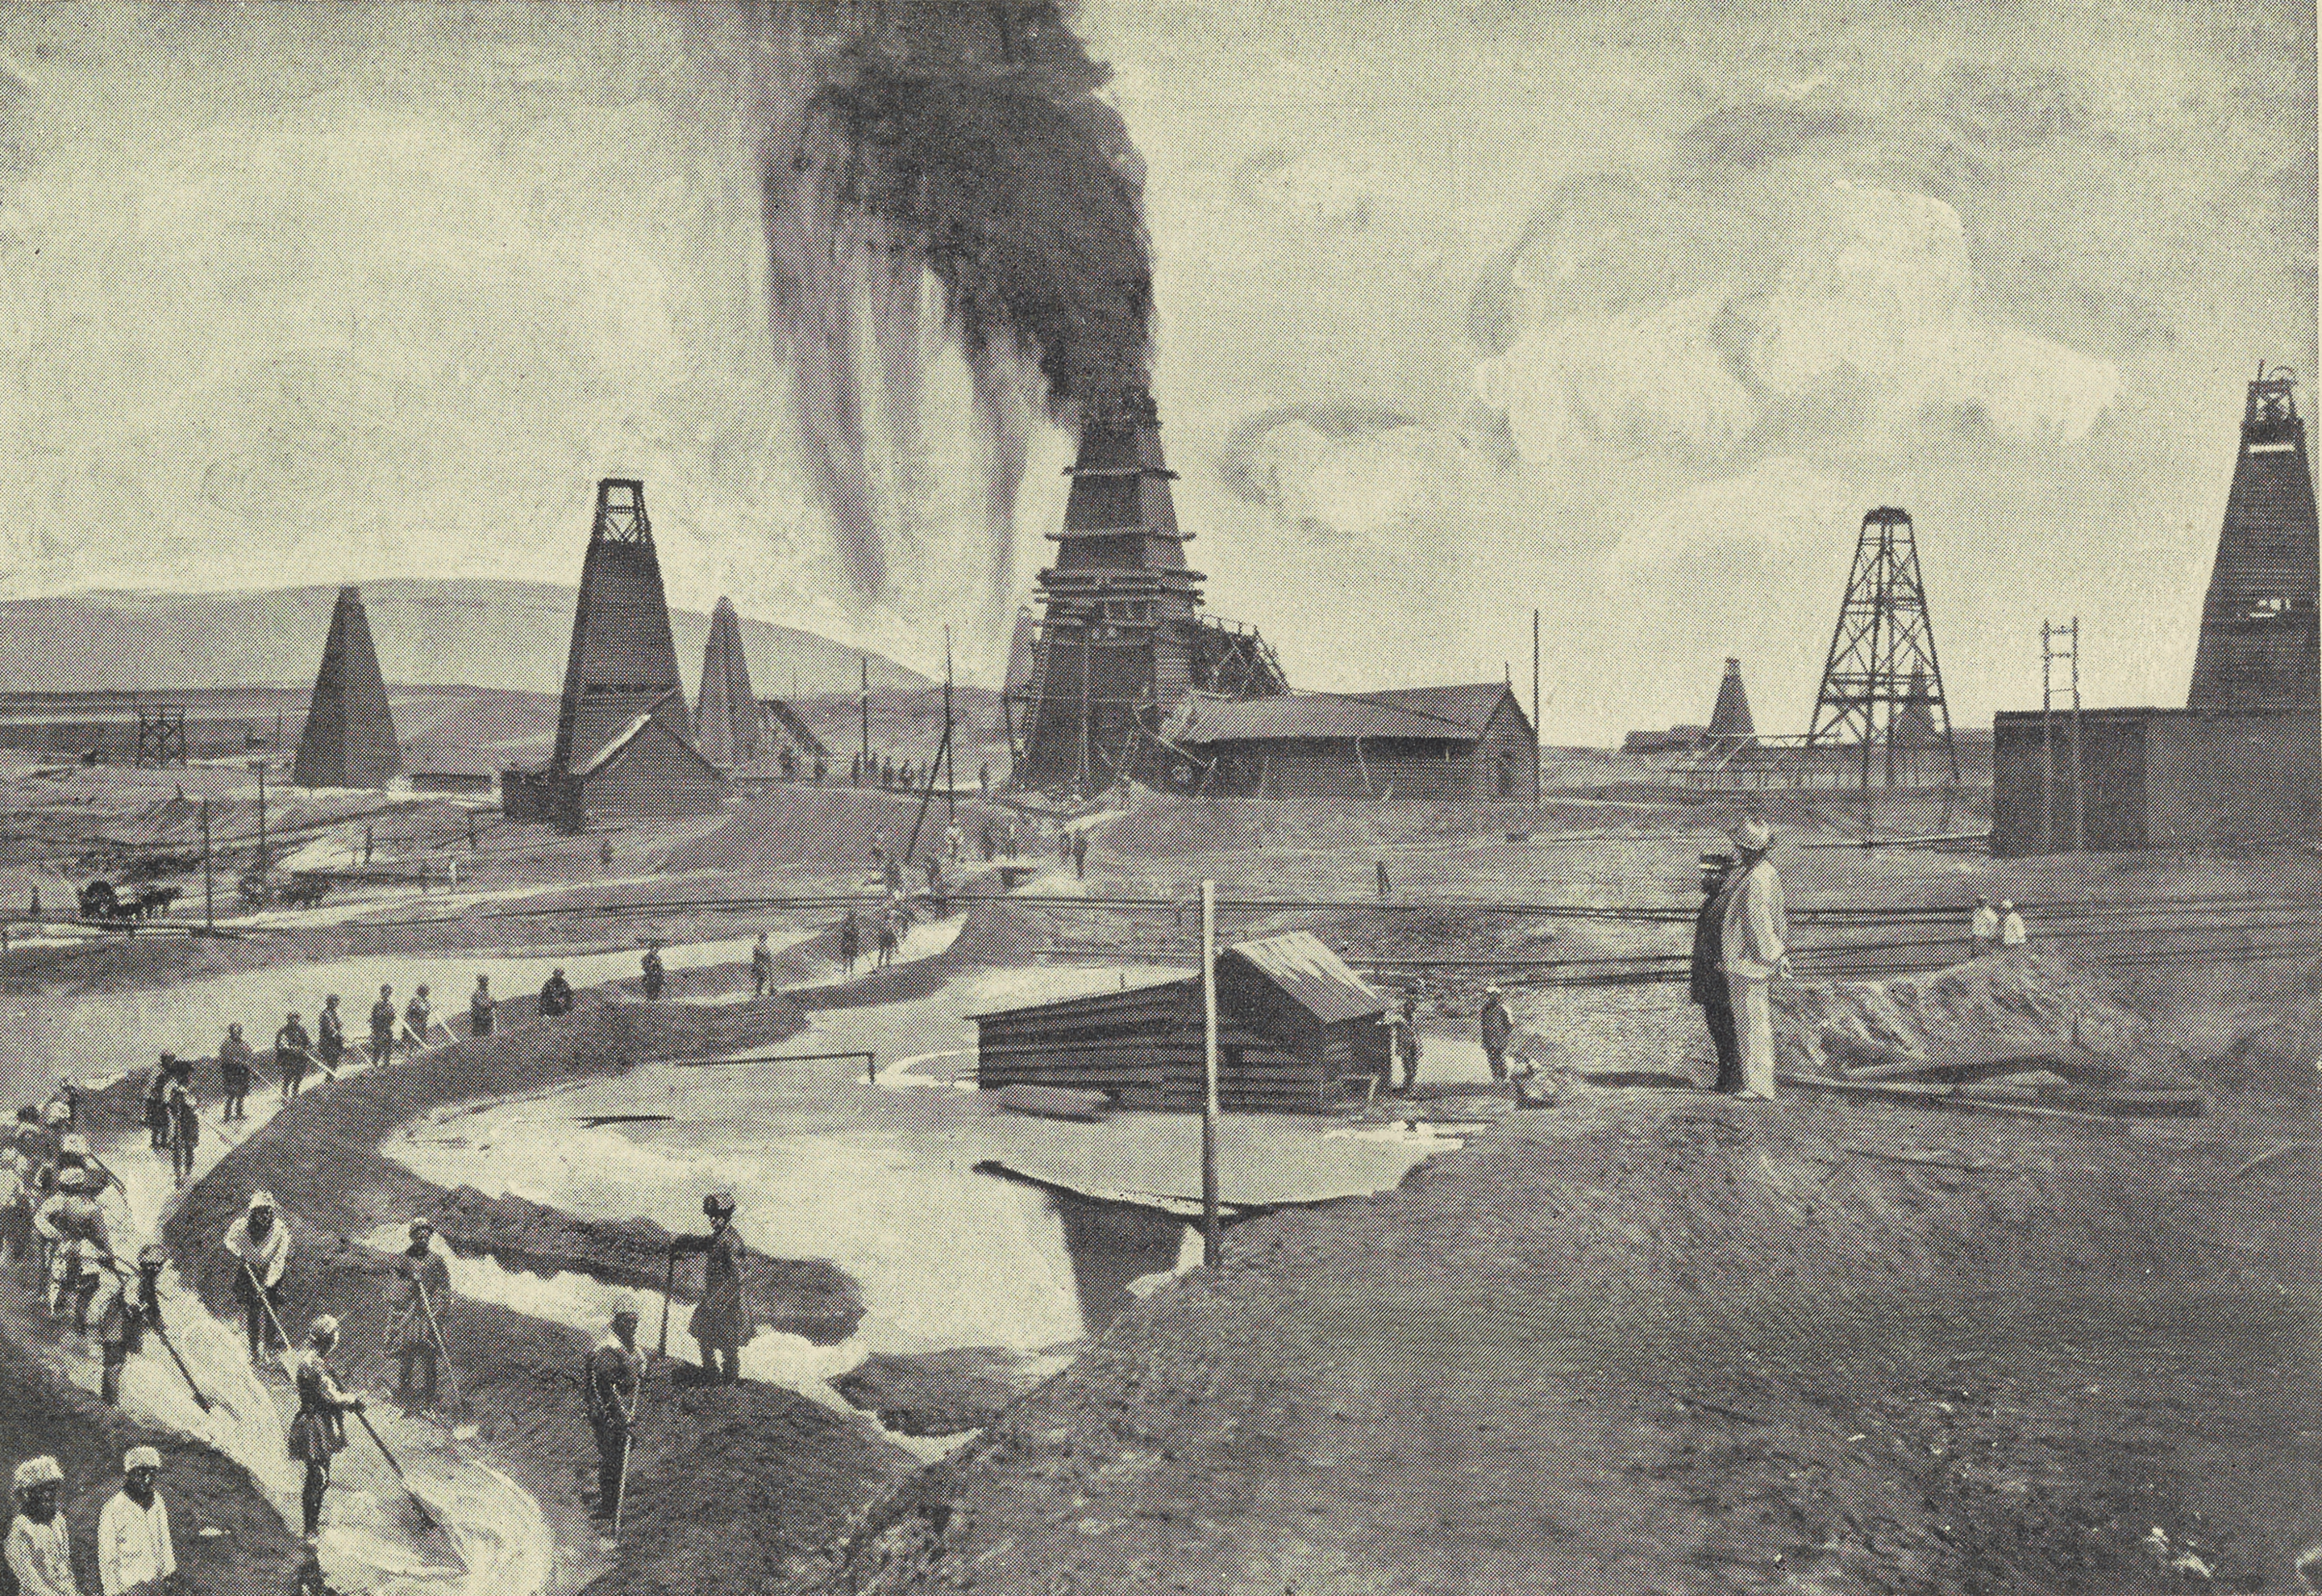 Oil wells in Baku